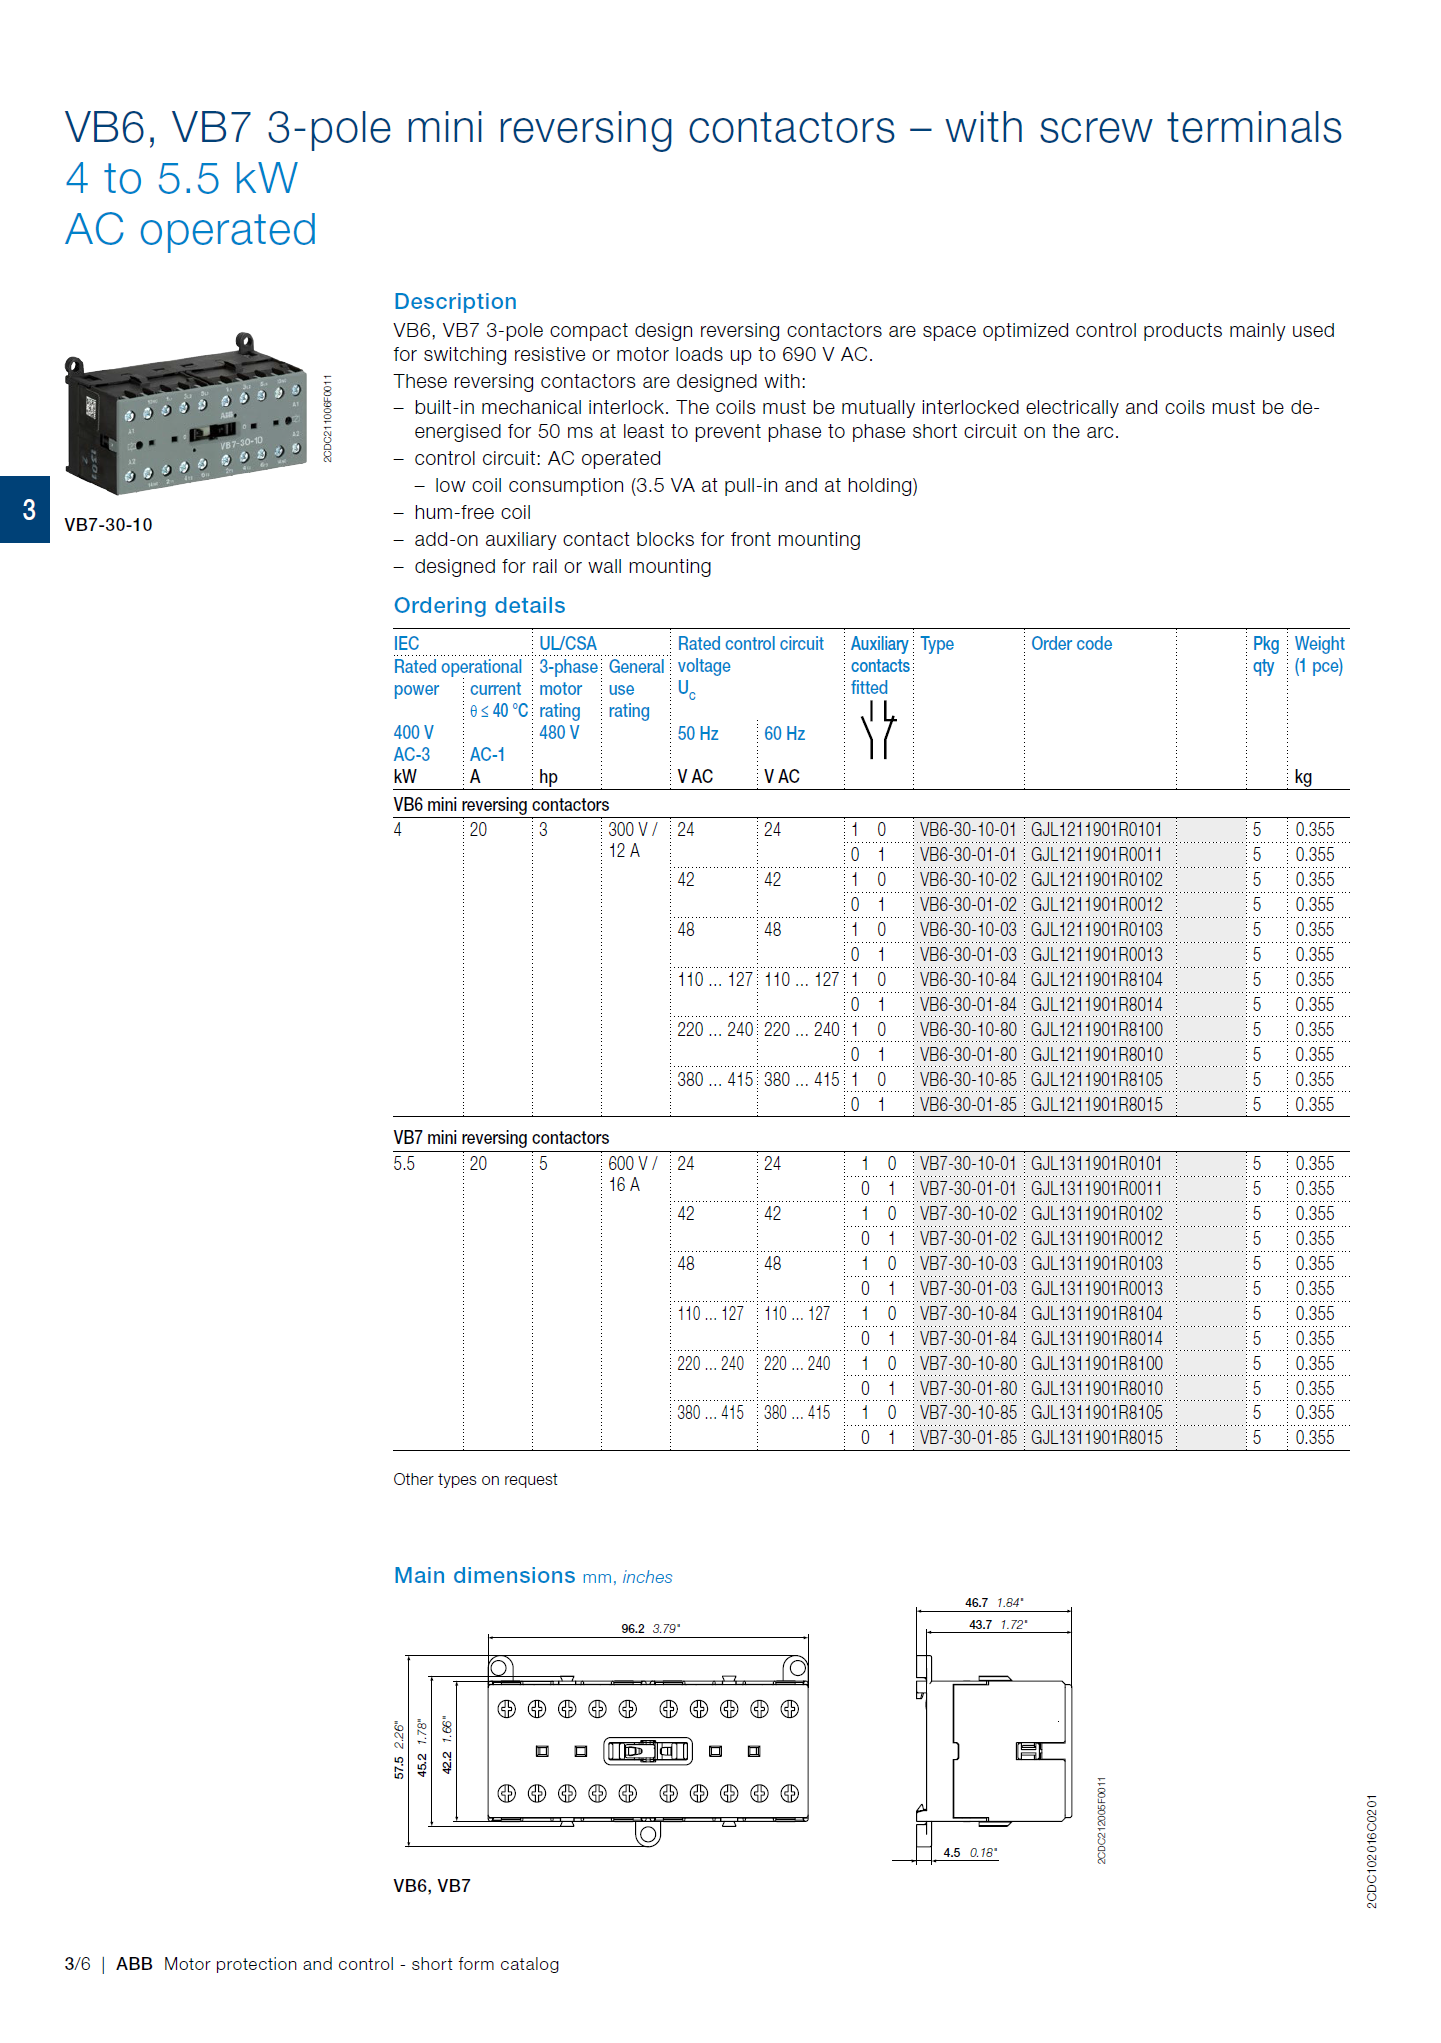 ABB B6, B7 series mini contactors: B7-22-00-P / 01 GJL1311509R0001